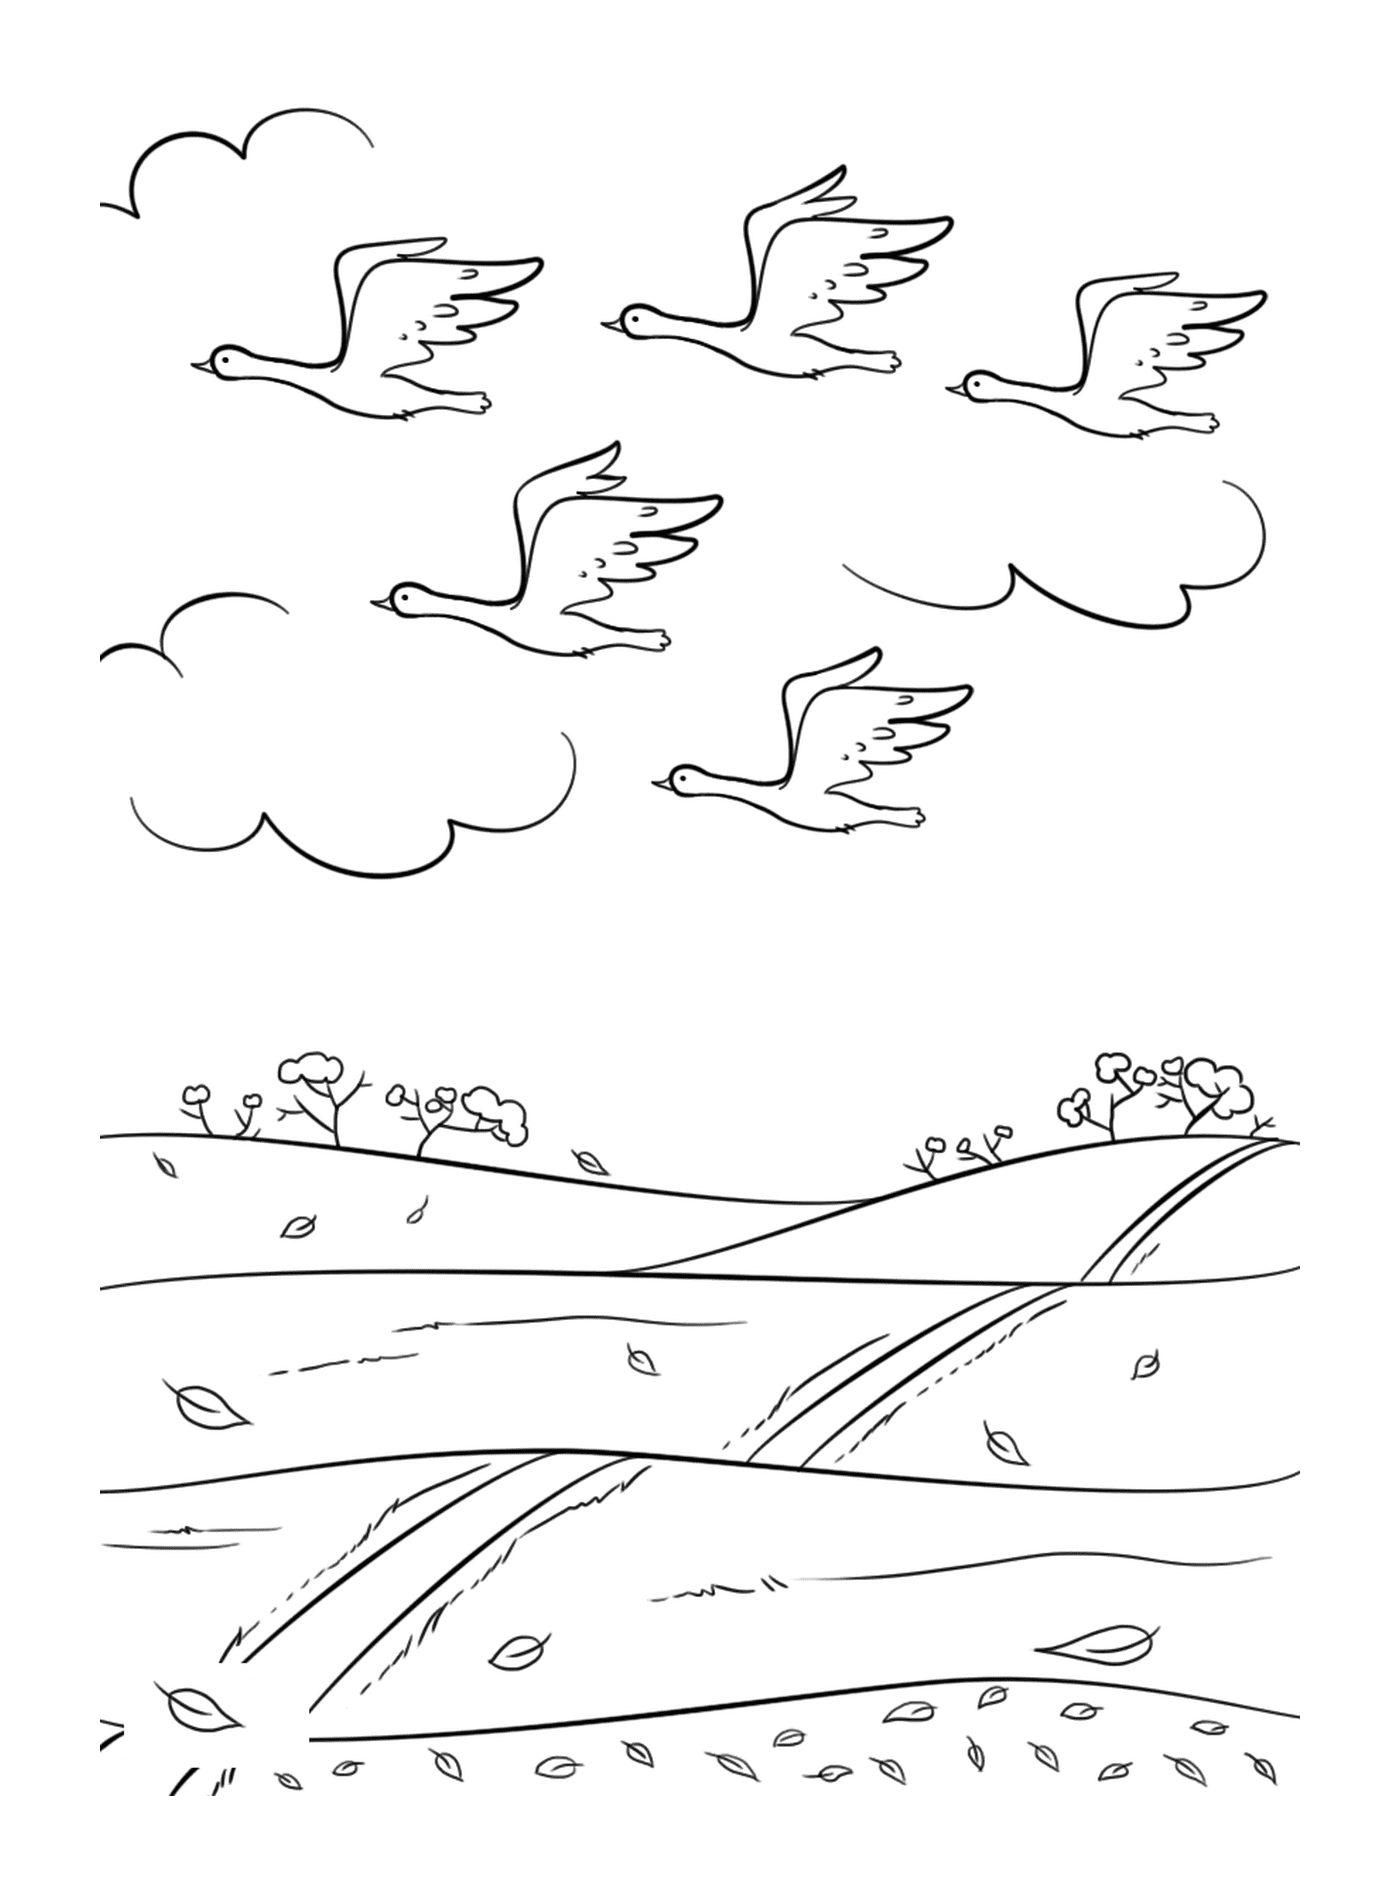  Um grupo de pássaros voando sobre um campo 